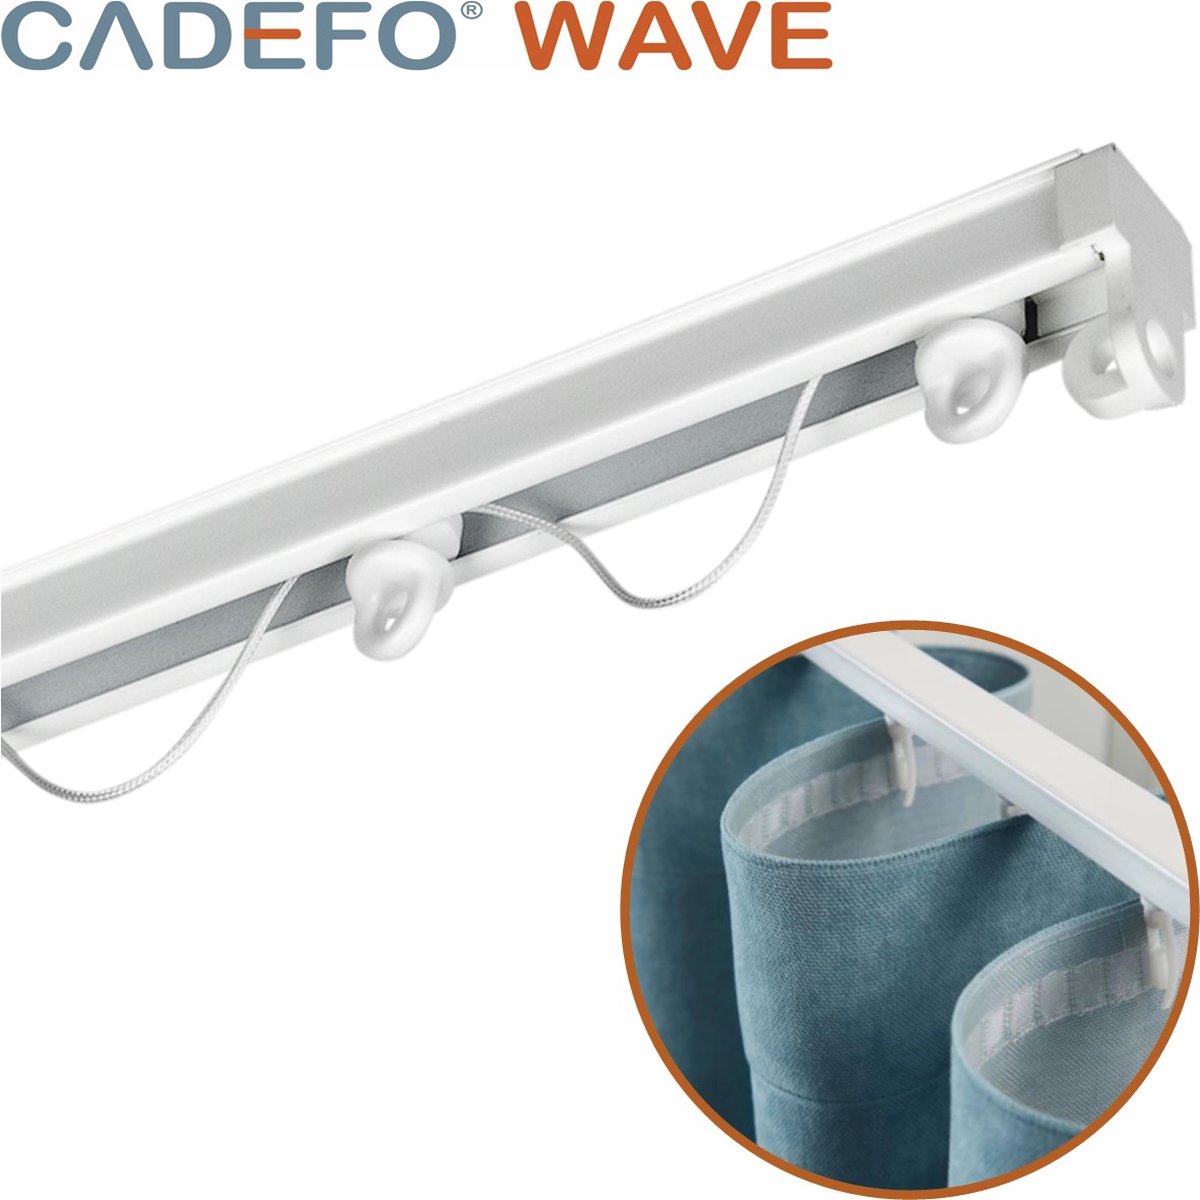 CADEFO WAVE (501 - 550 cm) Gordijnrails - Compleet op maat! - UIT 1 STUK - Leverbaar tot 6 meter - Plafondbevestiging - Lengte 530 cm